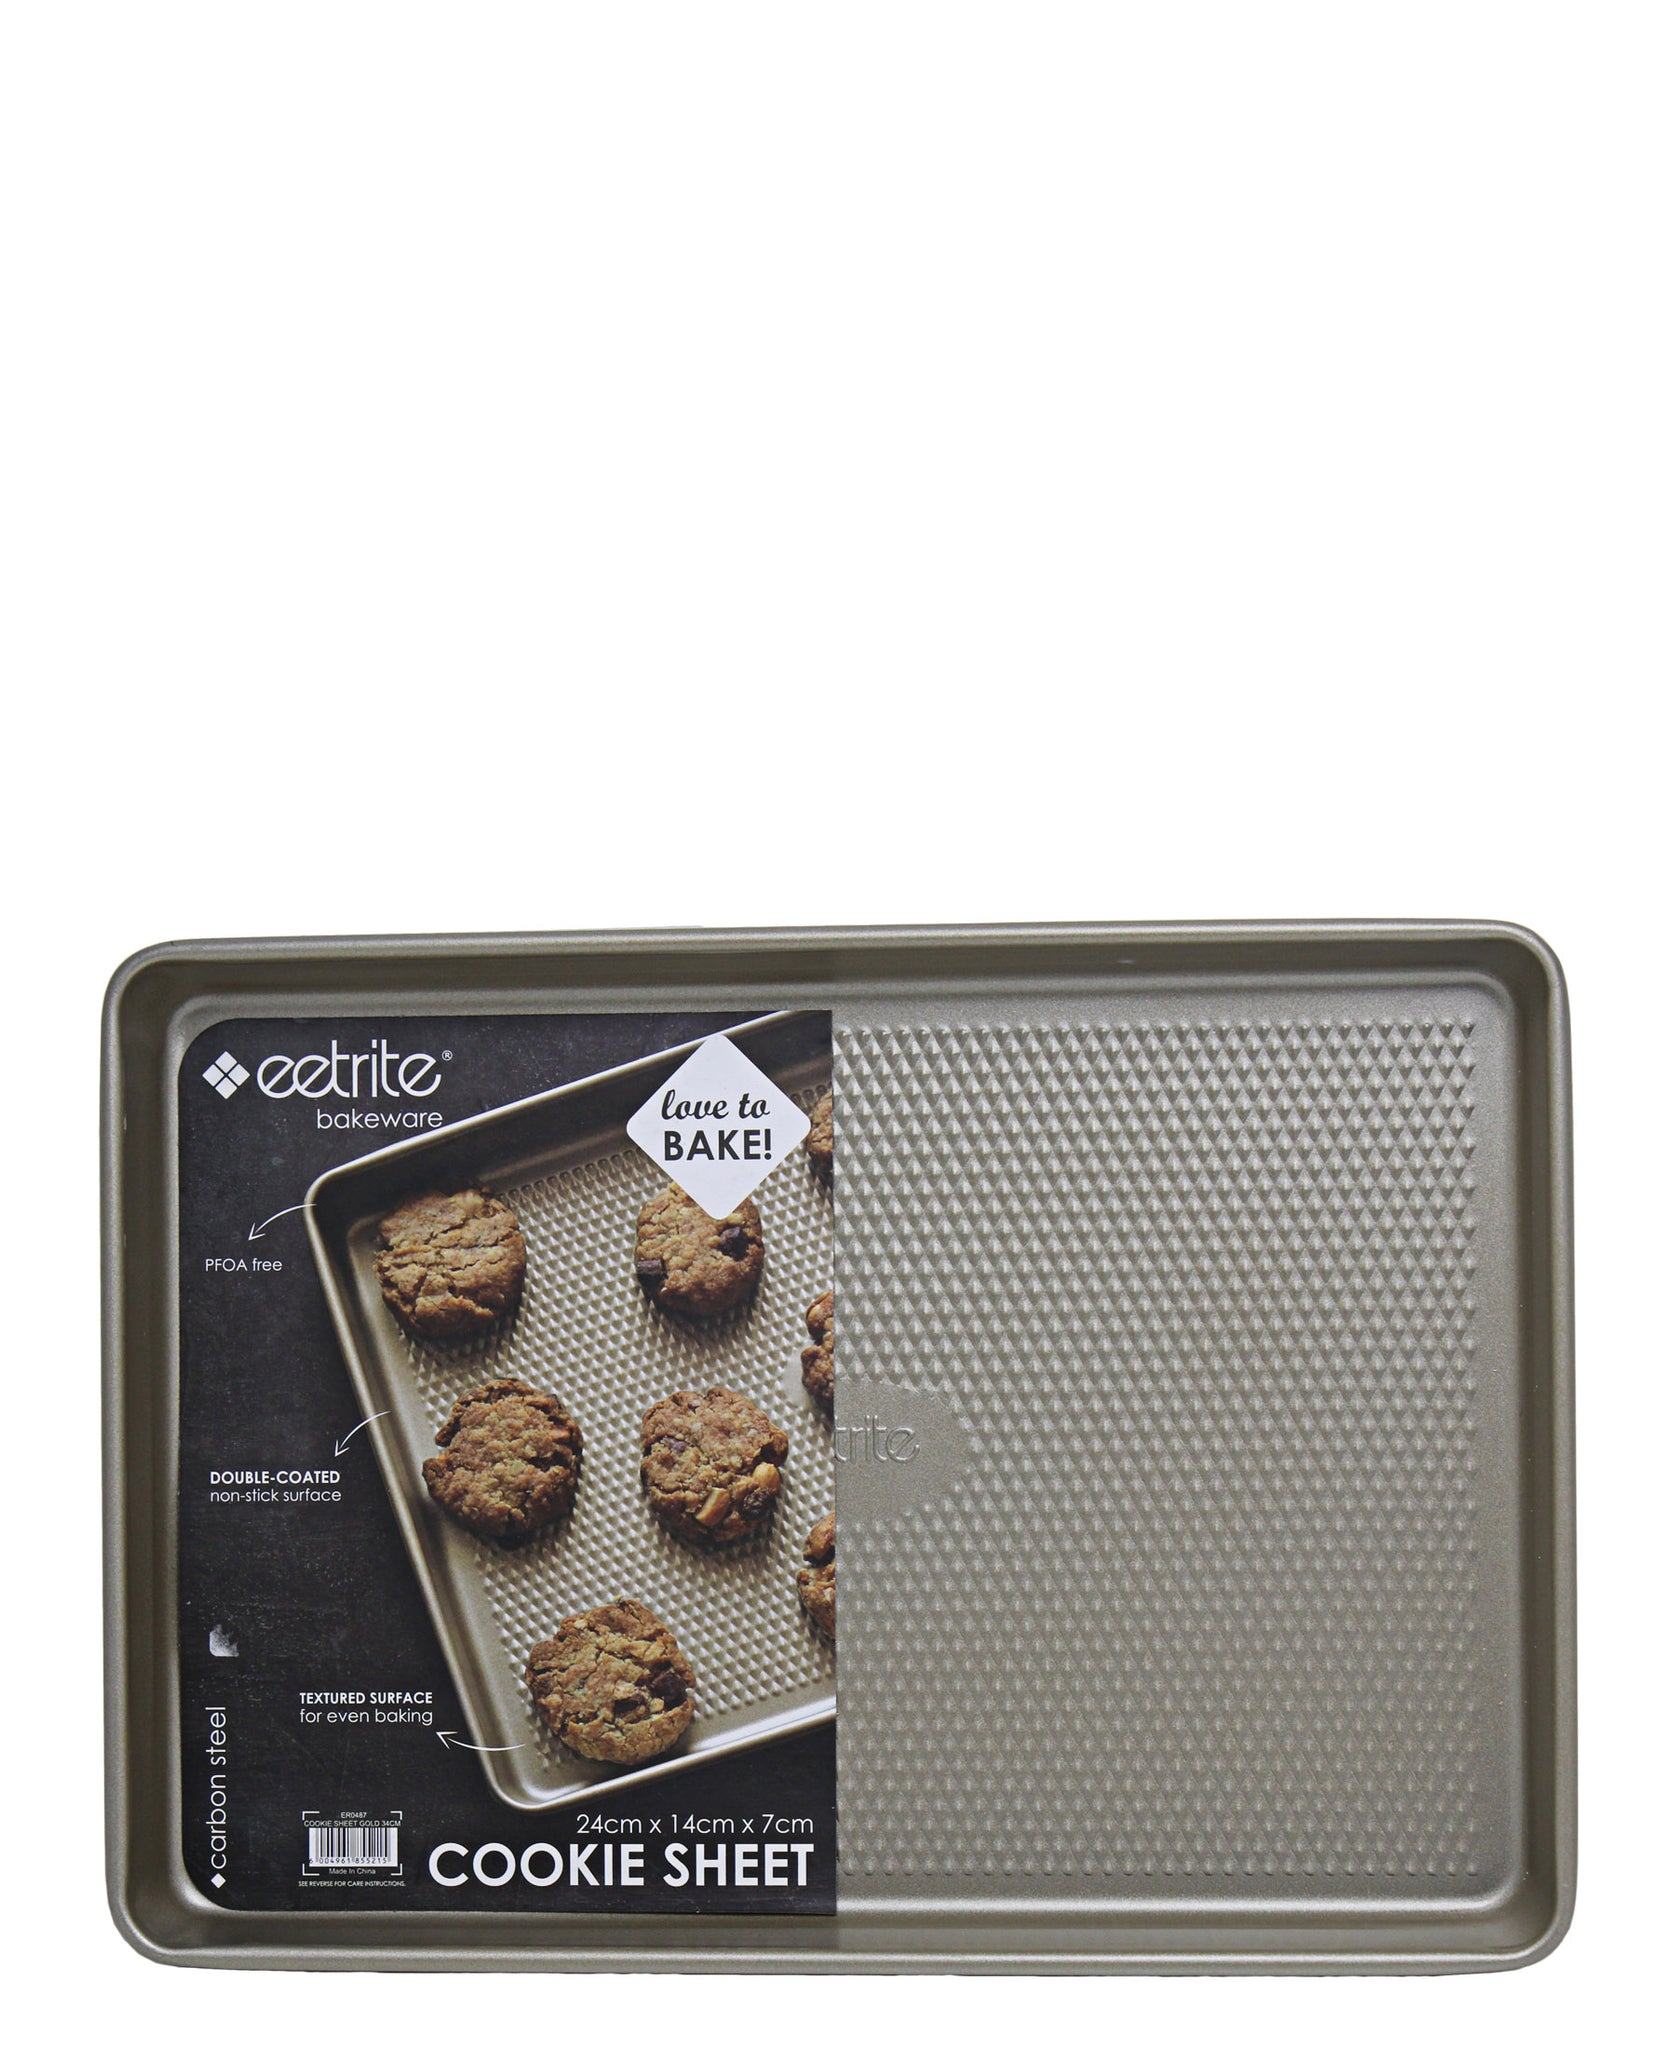 Eetrite Cookie Sheet 34cm - Black